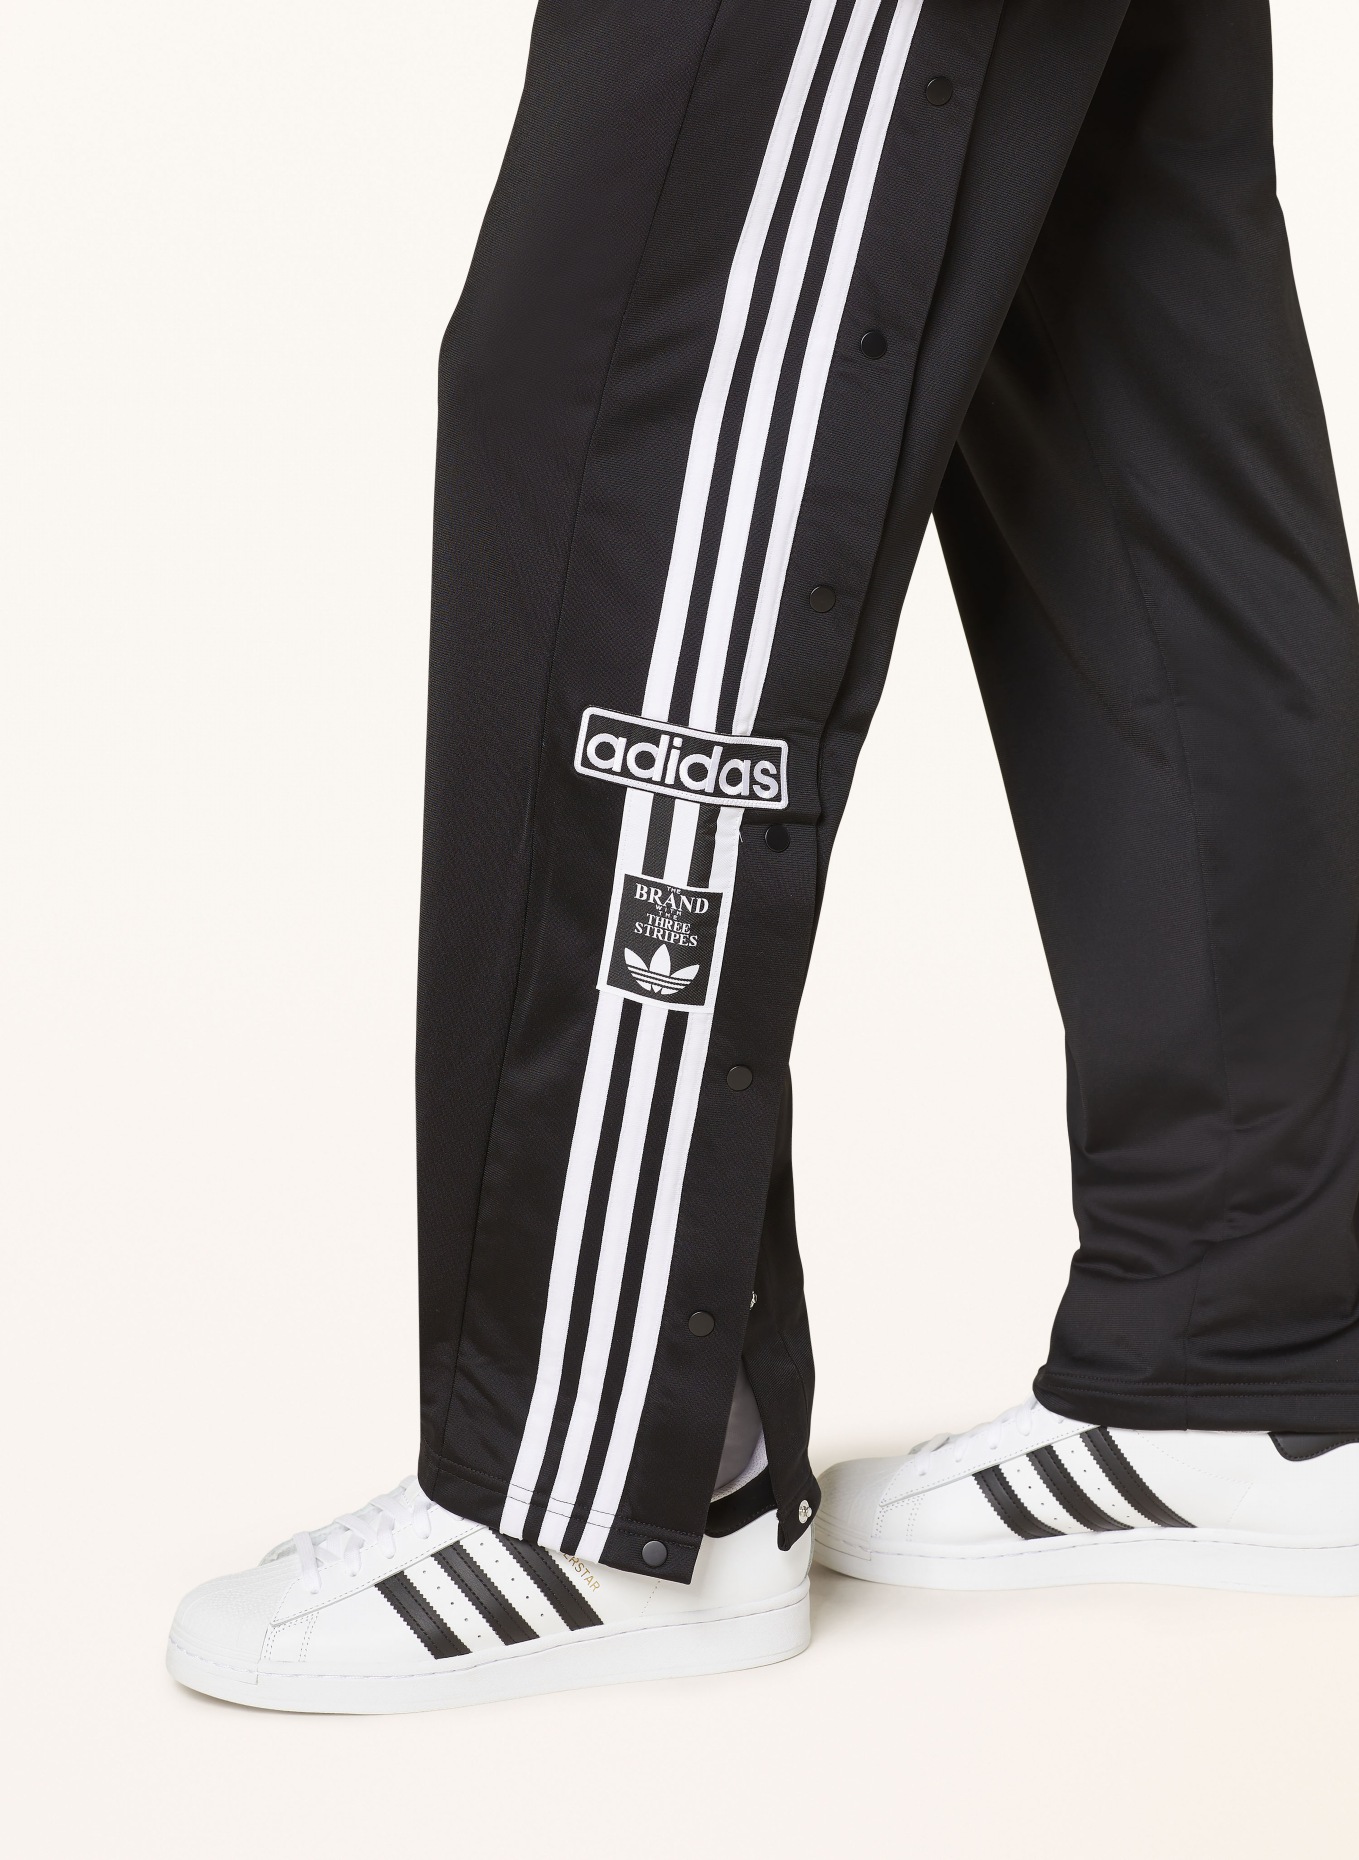 adidas Originals Track pants ADIBREAK in black/ white